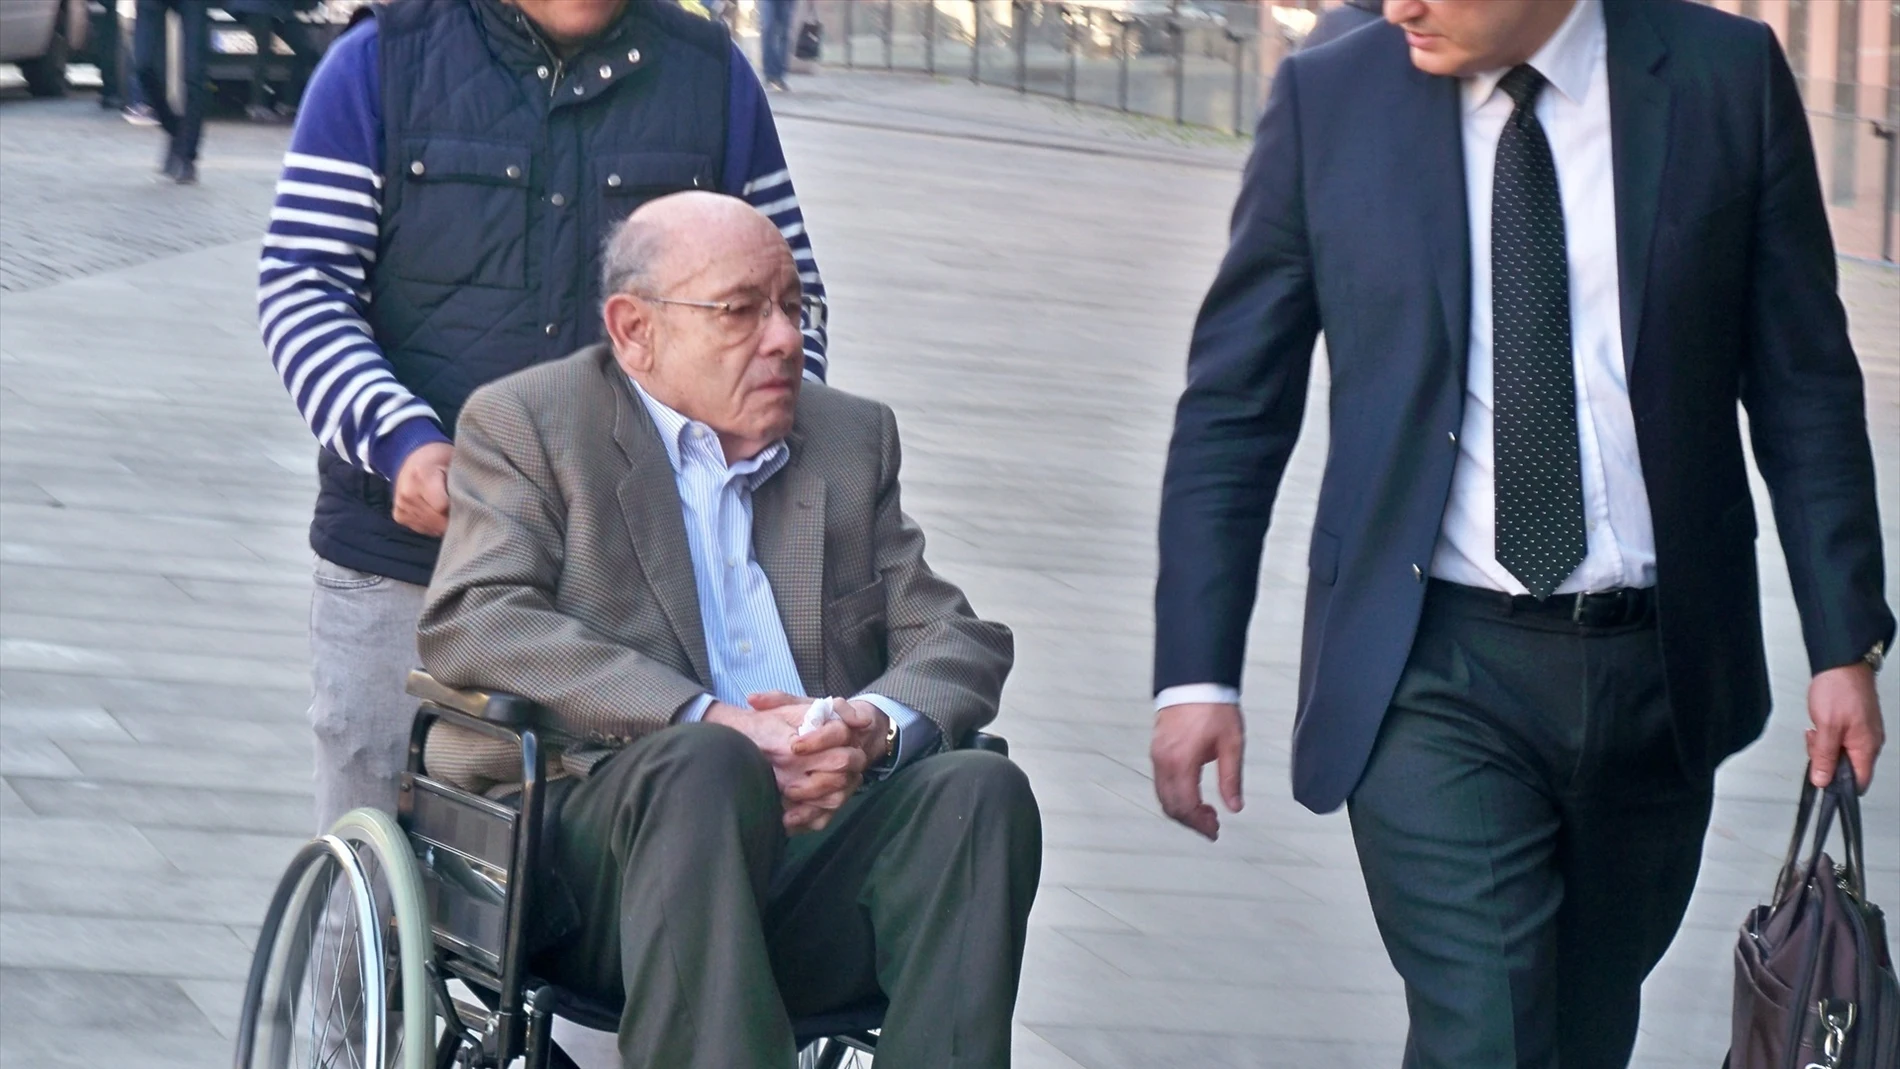 Millet llegando al juicio en la Ciudad de la Justicia, en 2017.